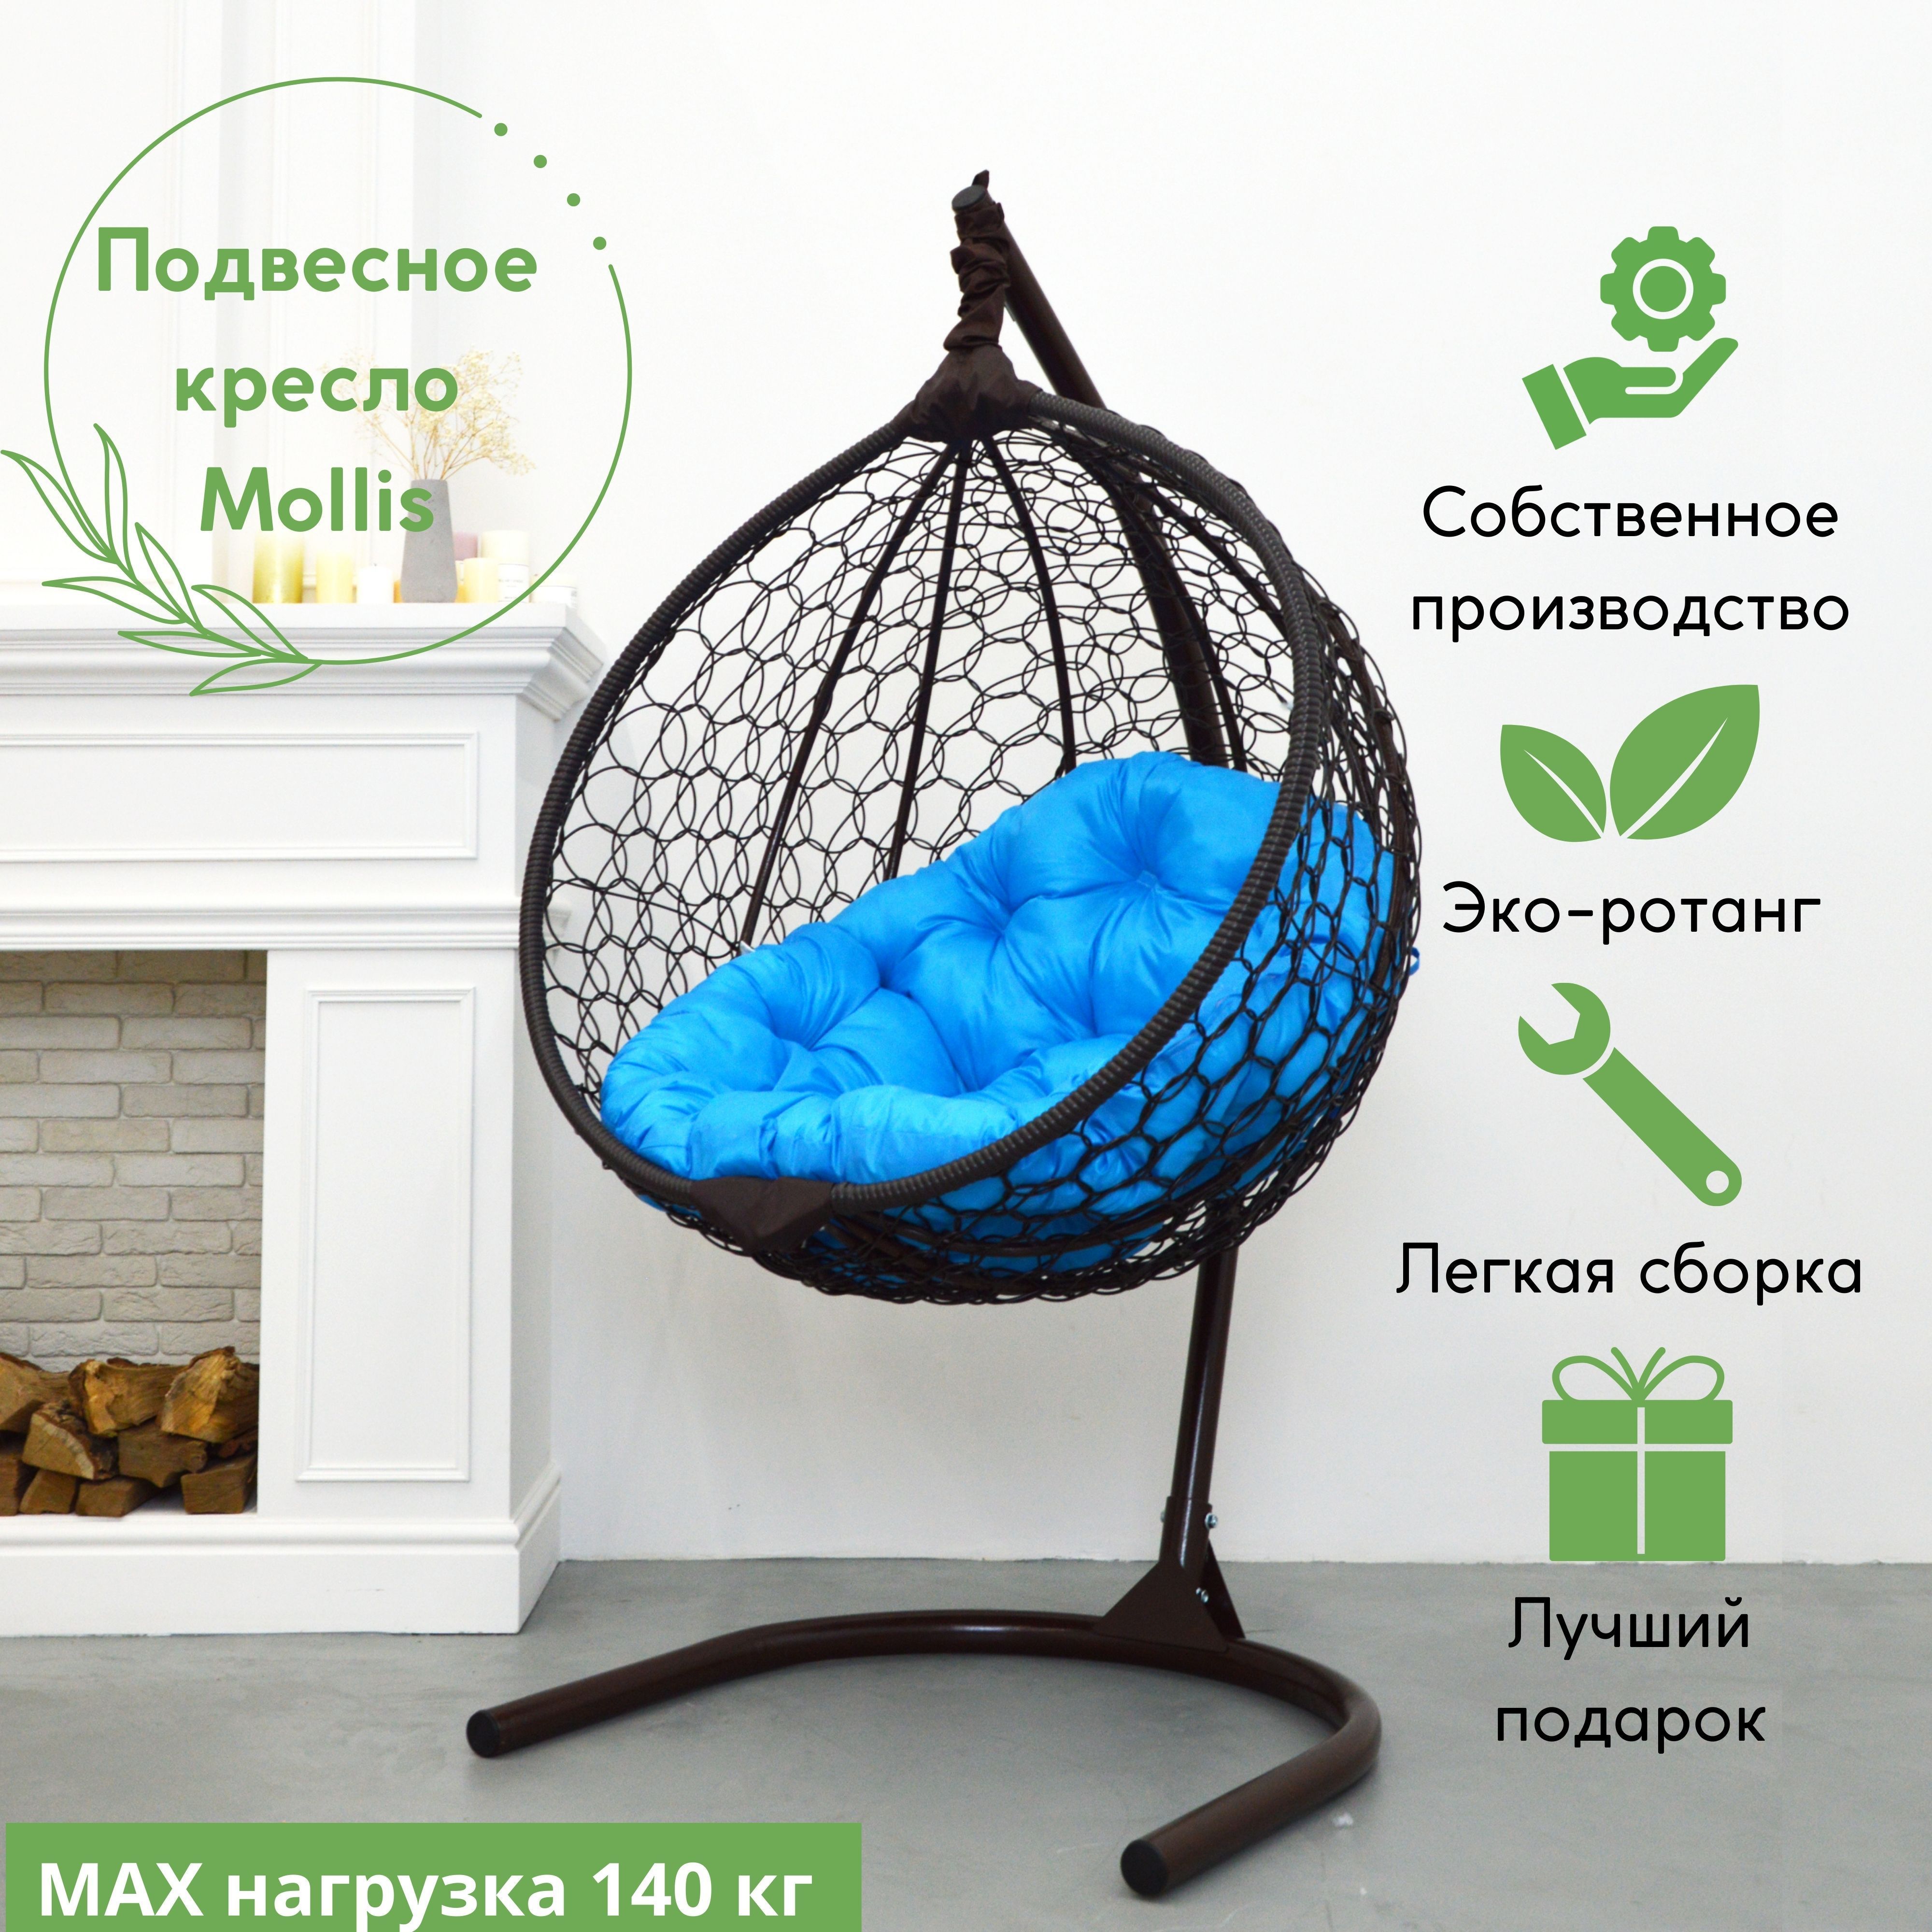 Подвесное кресло EcoKokon Smile Plus Венге основ 140+ 5 Круг голубая круглая подушка